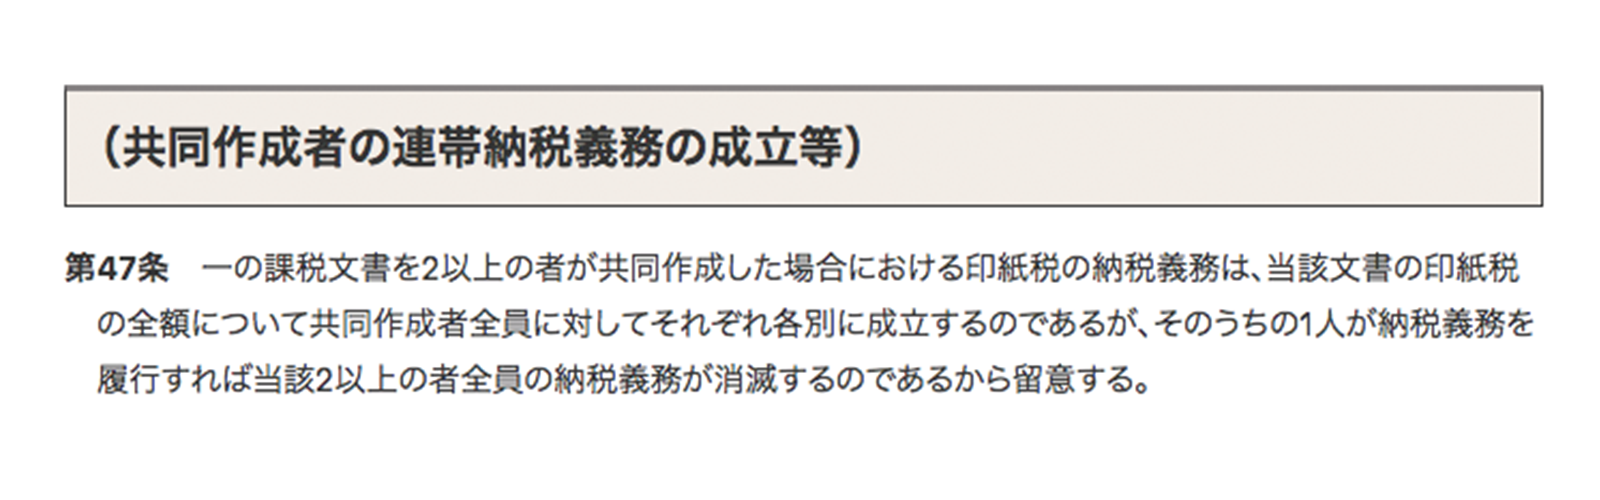 国税庁 印紙税法基本通達 https://www.nta.go.jp/law/tsutatsu/kihon/inshi/inshi01/07.htm 2020年9月2日最終アクセス